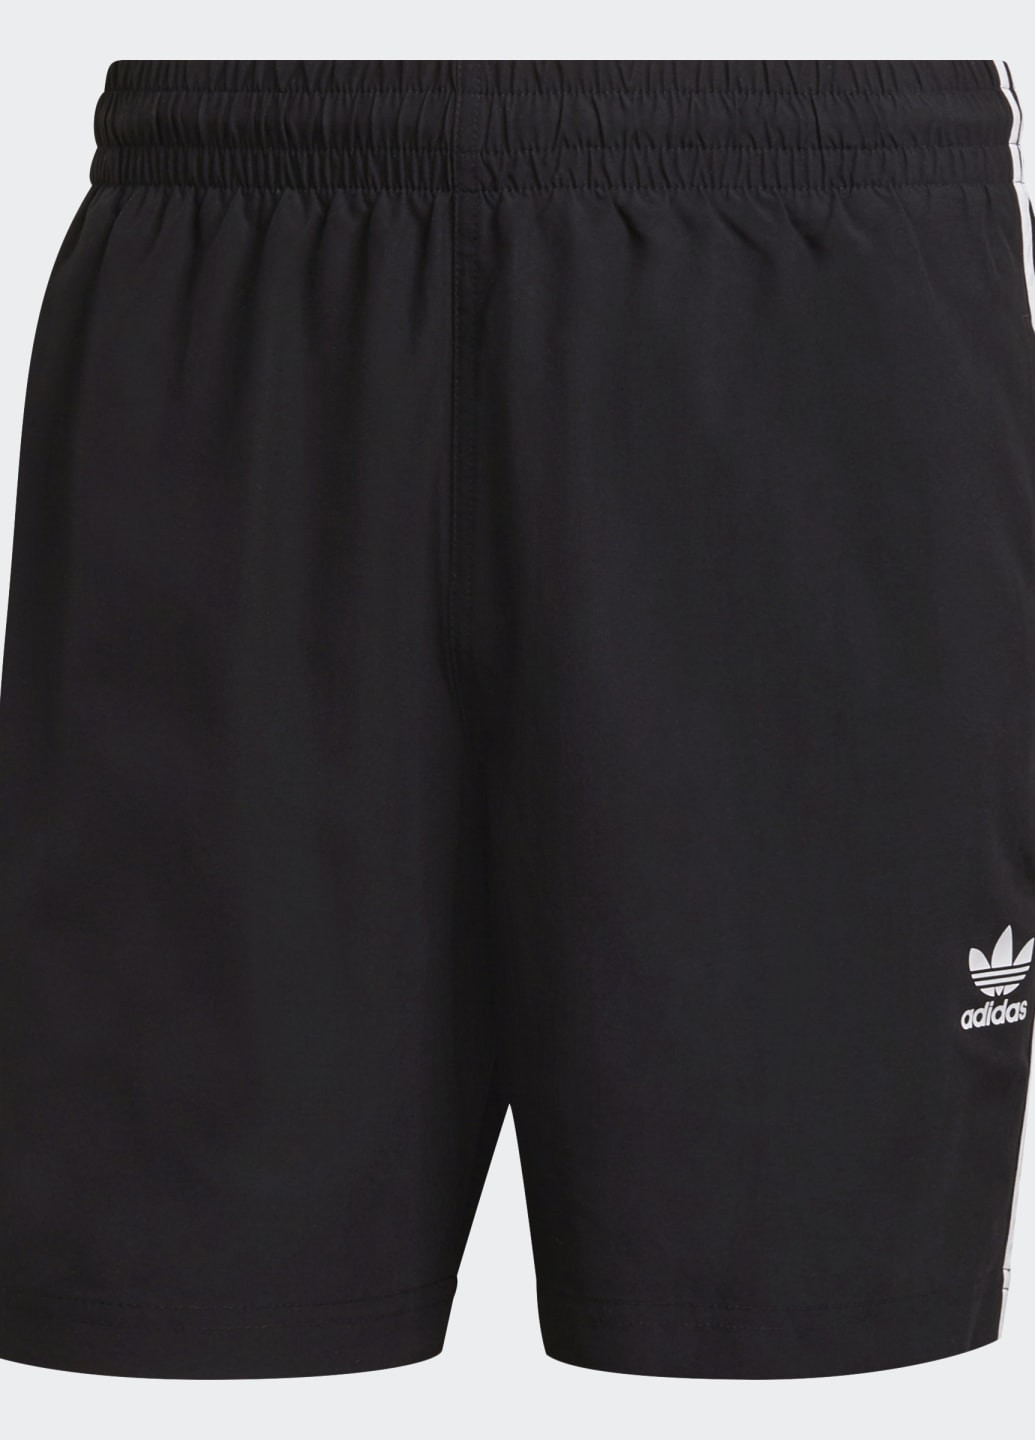 Мужские черные спортивные пляжные шорты adicolor classics 3-stripes adidas